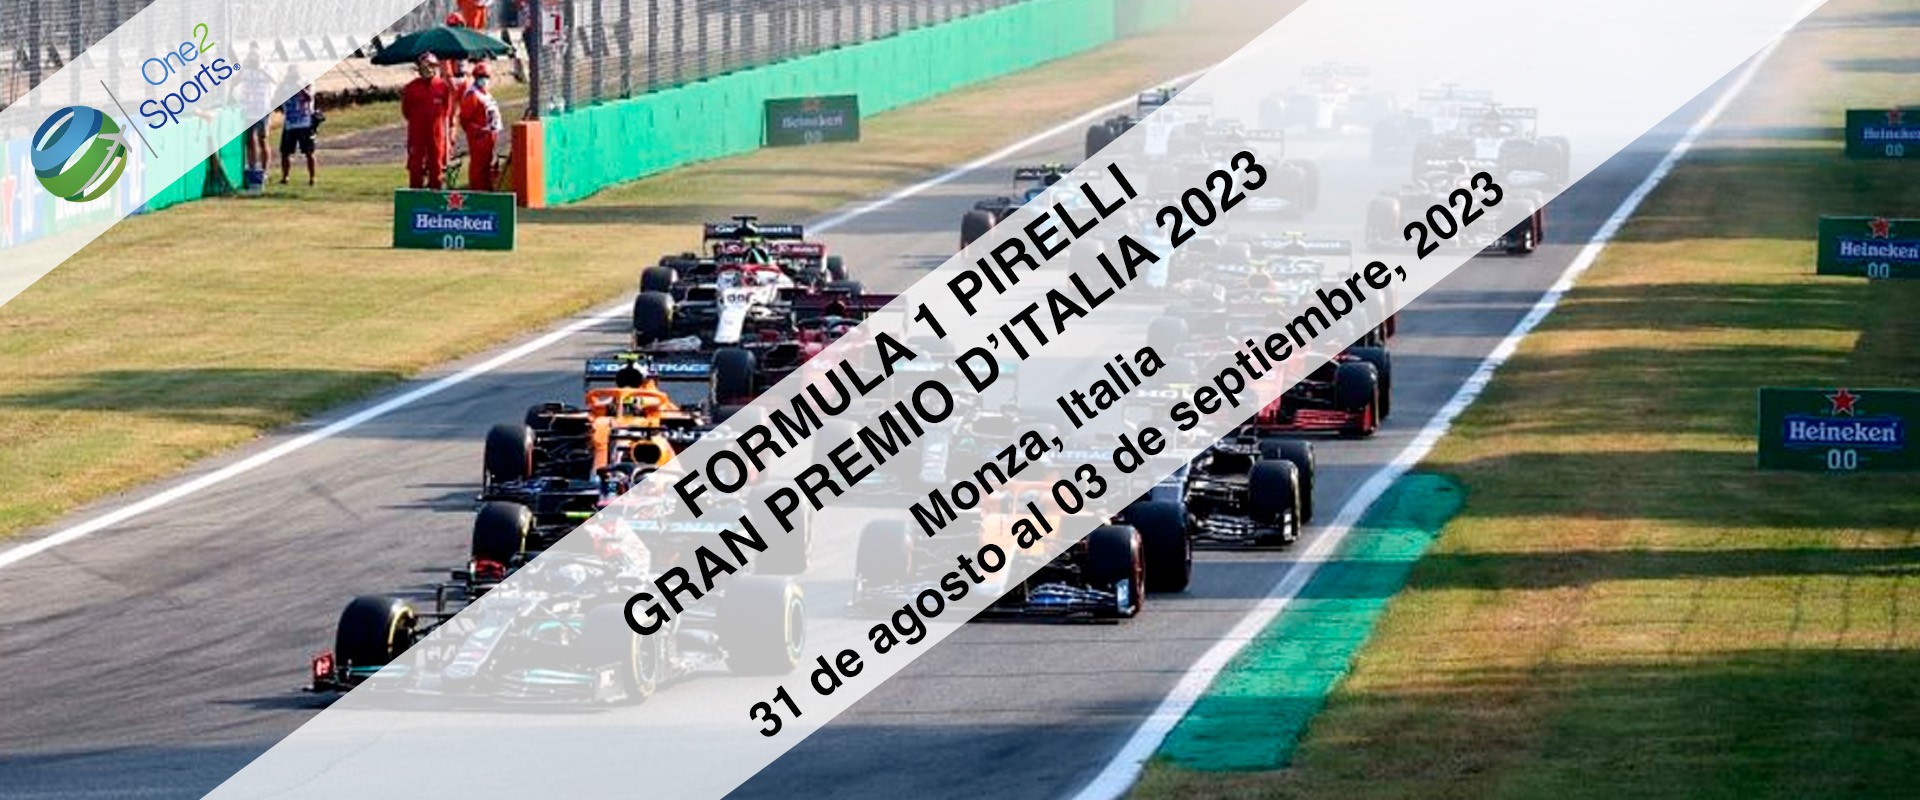 F1 Gran Premio Italia 